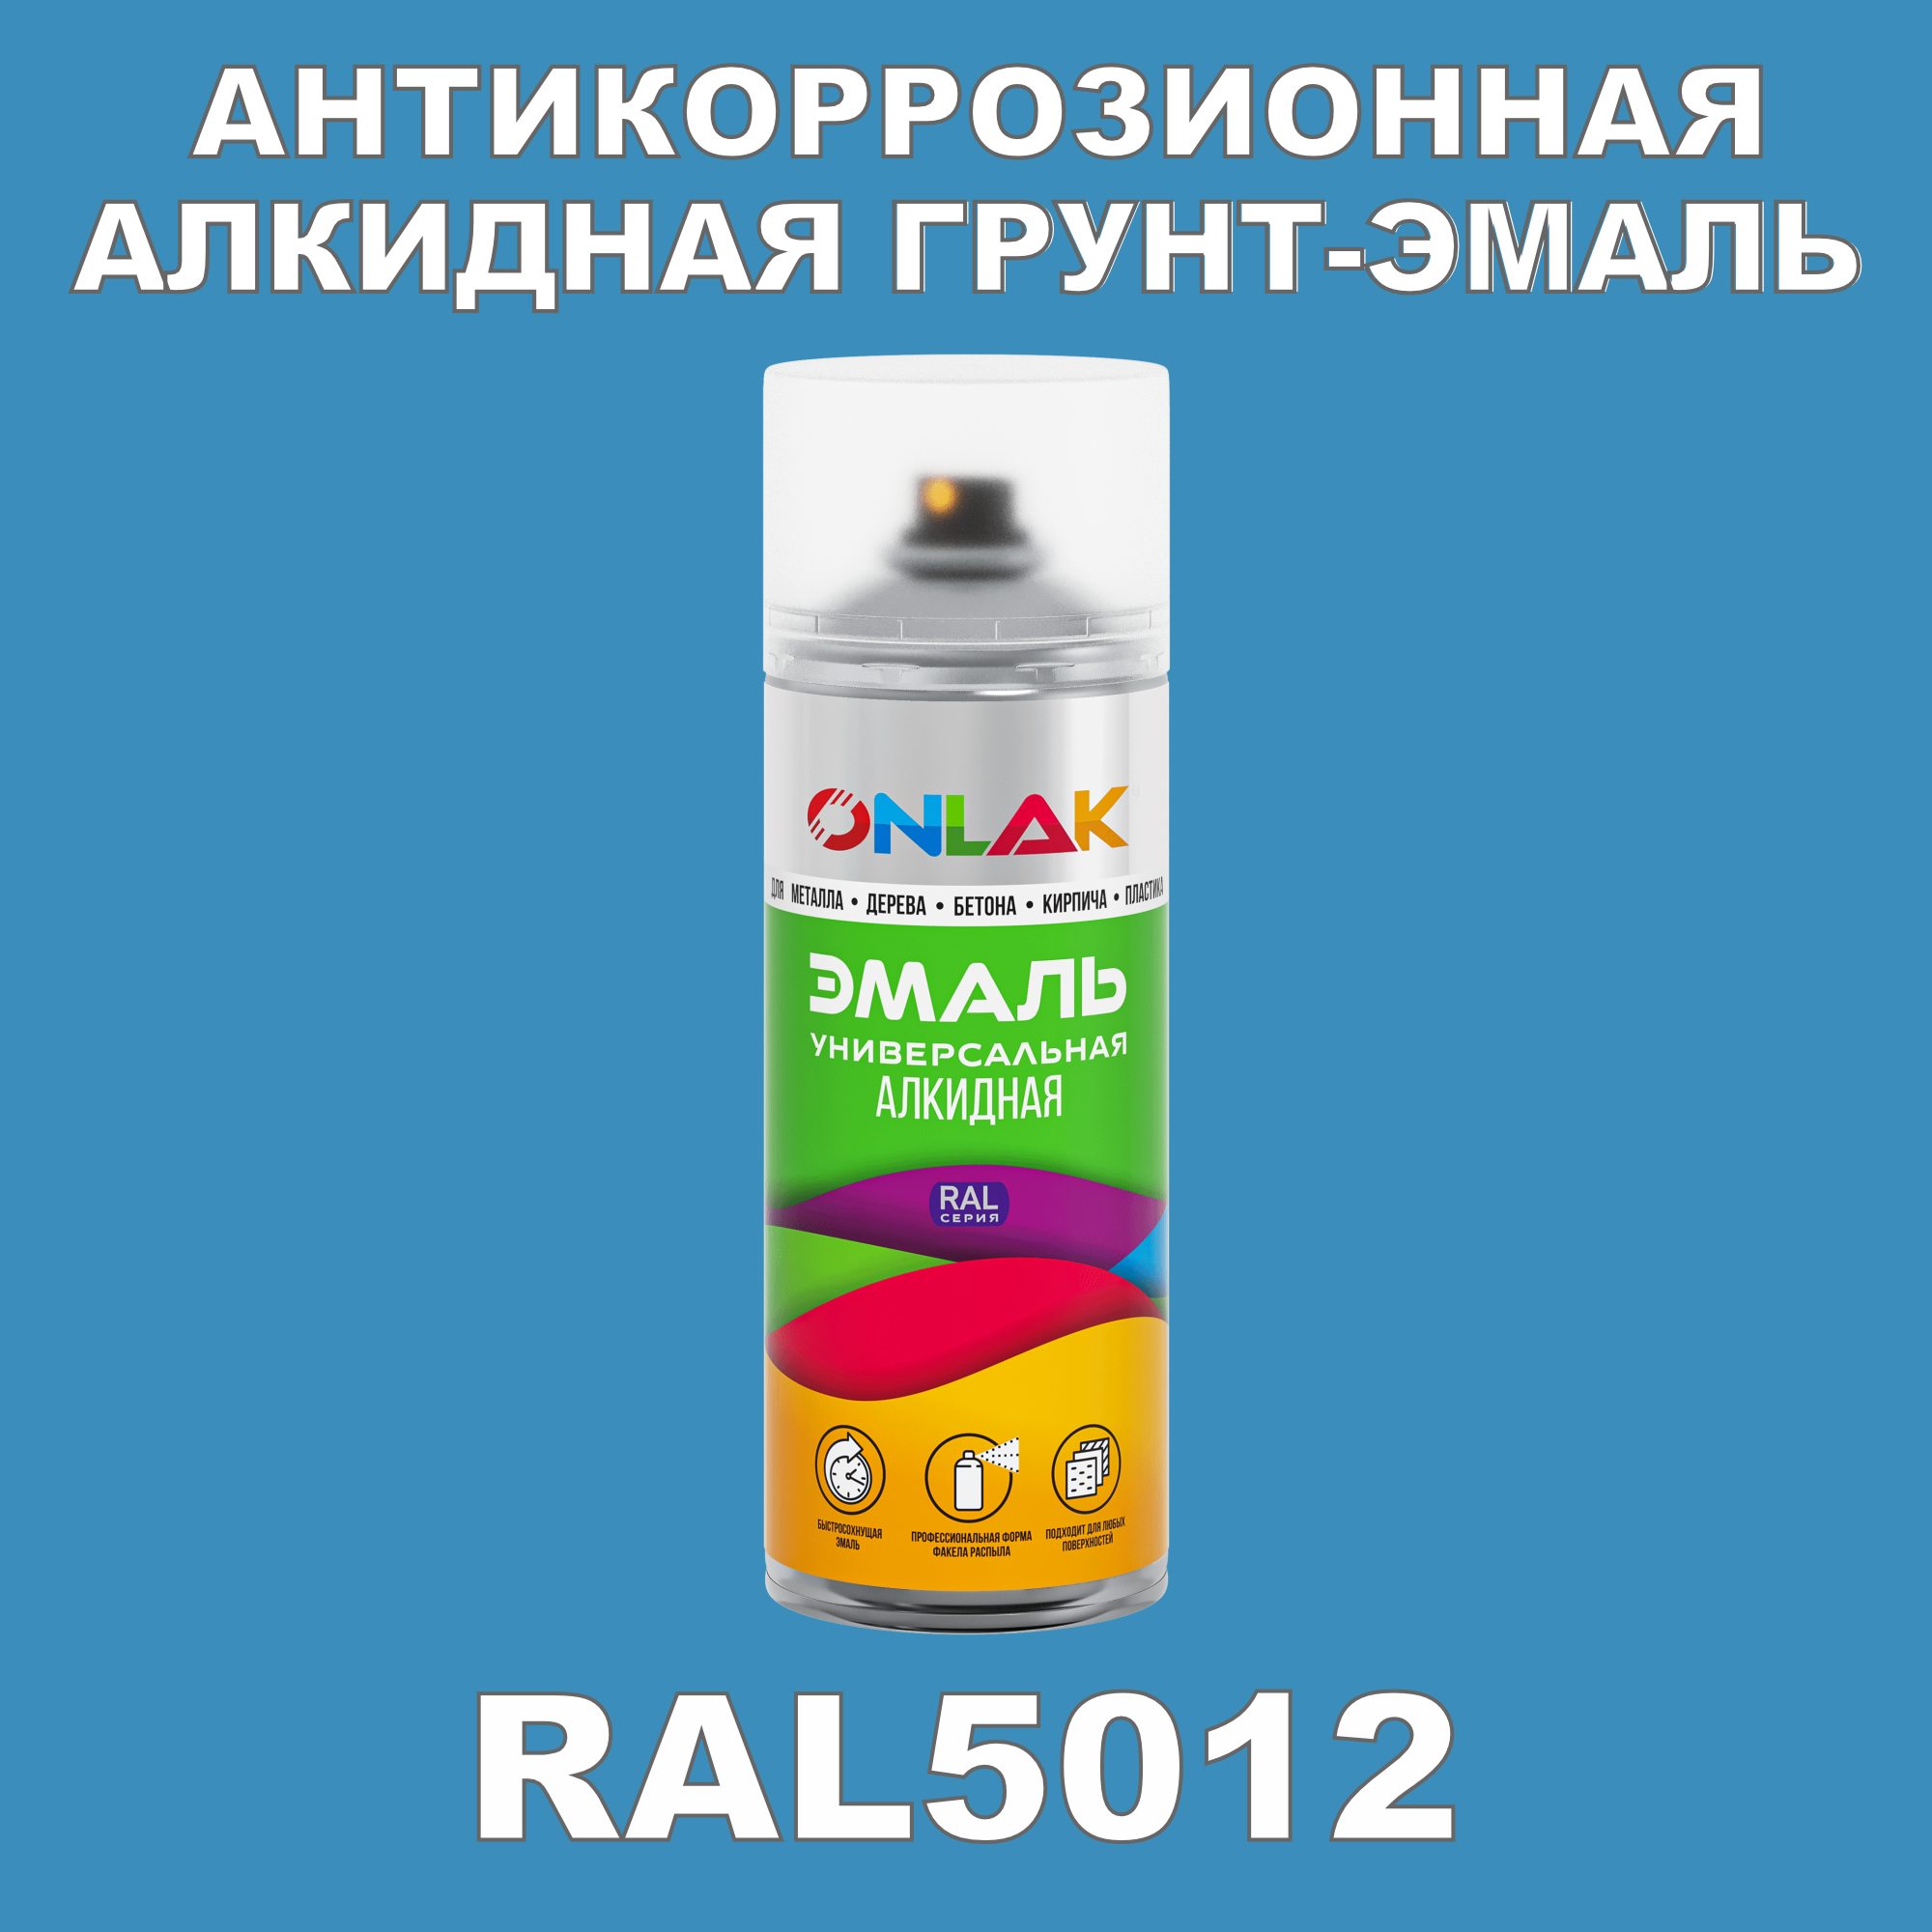 Антикоррозионная грунт-эмаль ONLAK RAL5012 полуматовая для металла и защиты от ржавчины